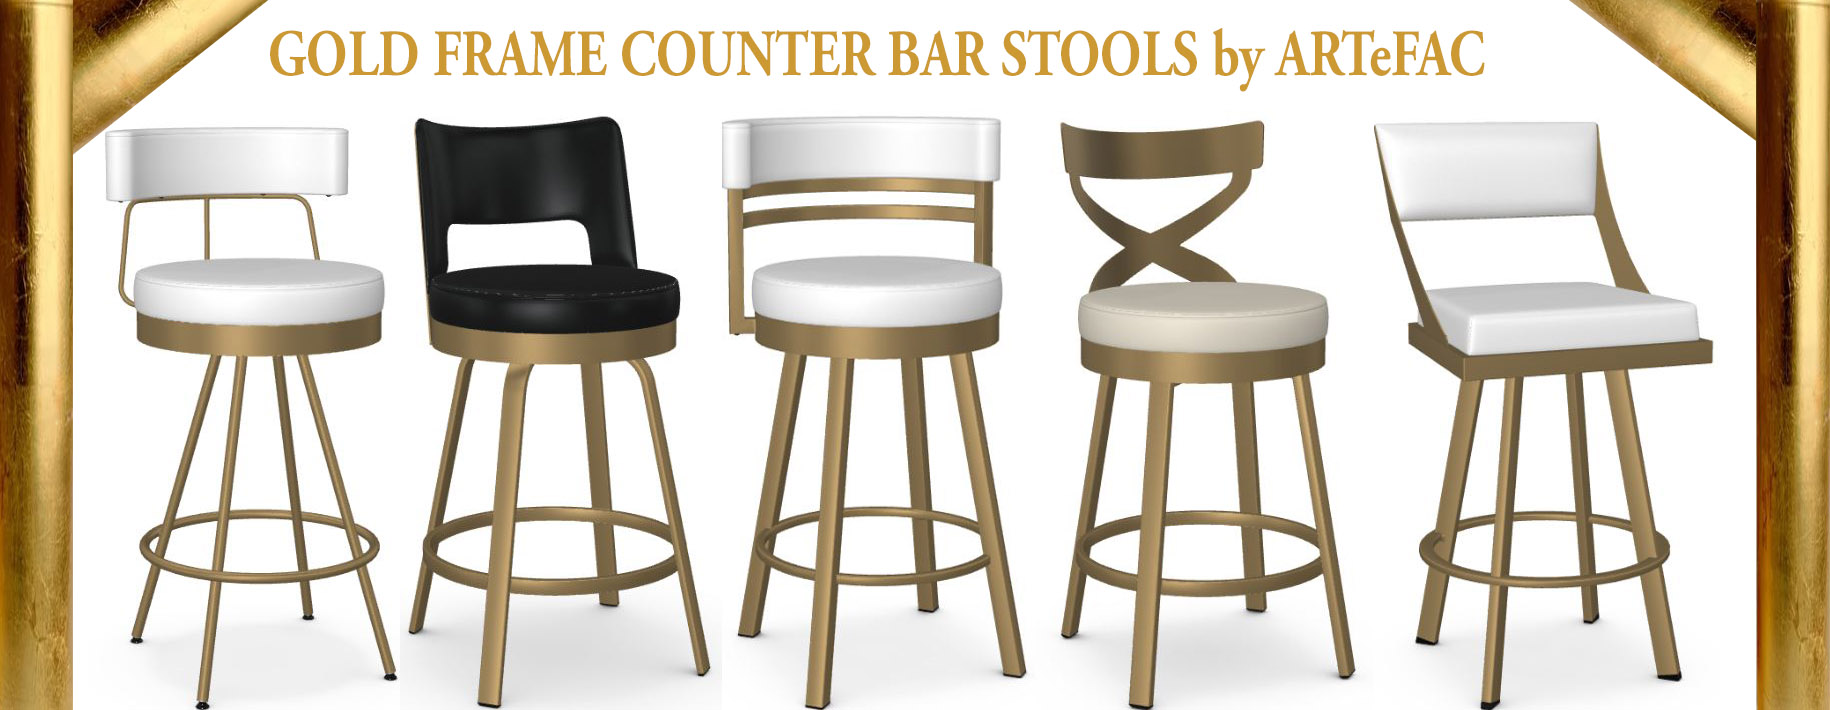 Chairs Bar Stools In Usa Artefac, Narrow Bar Stools Canada